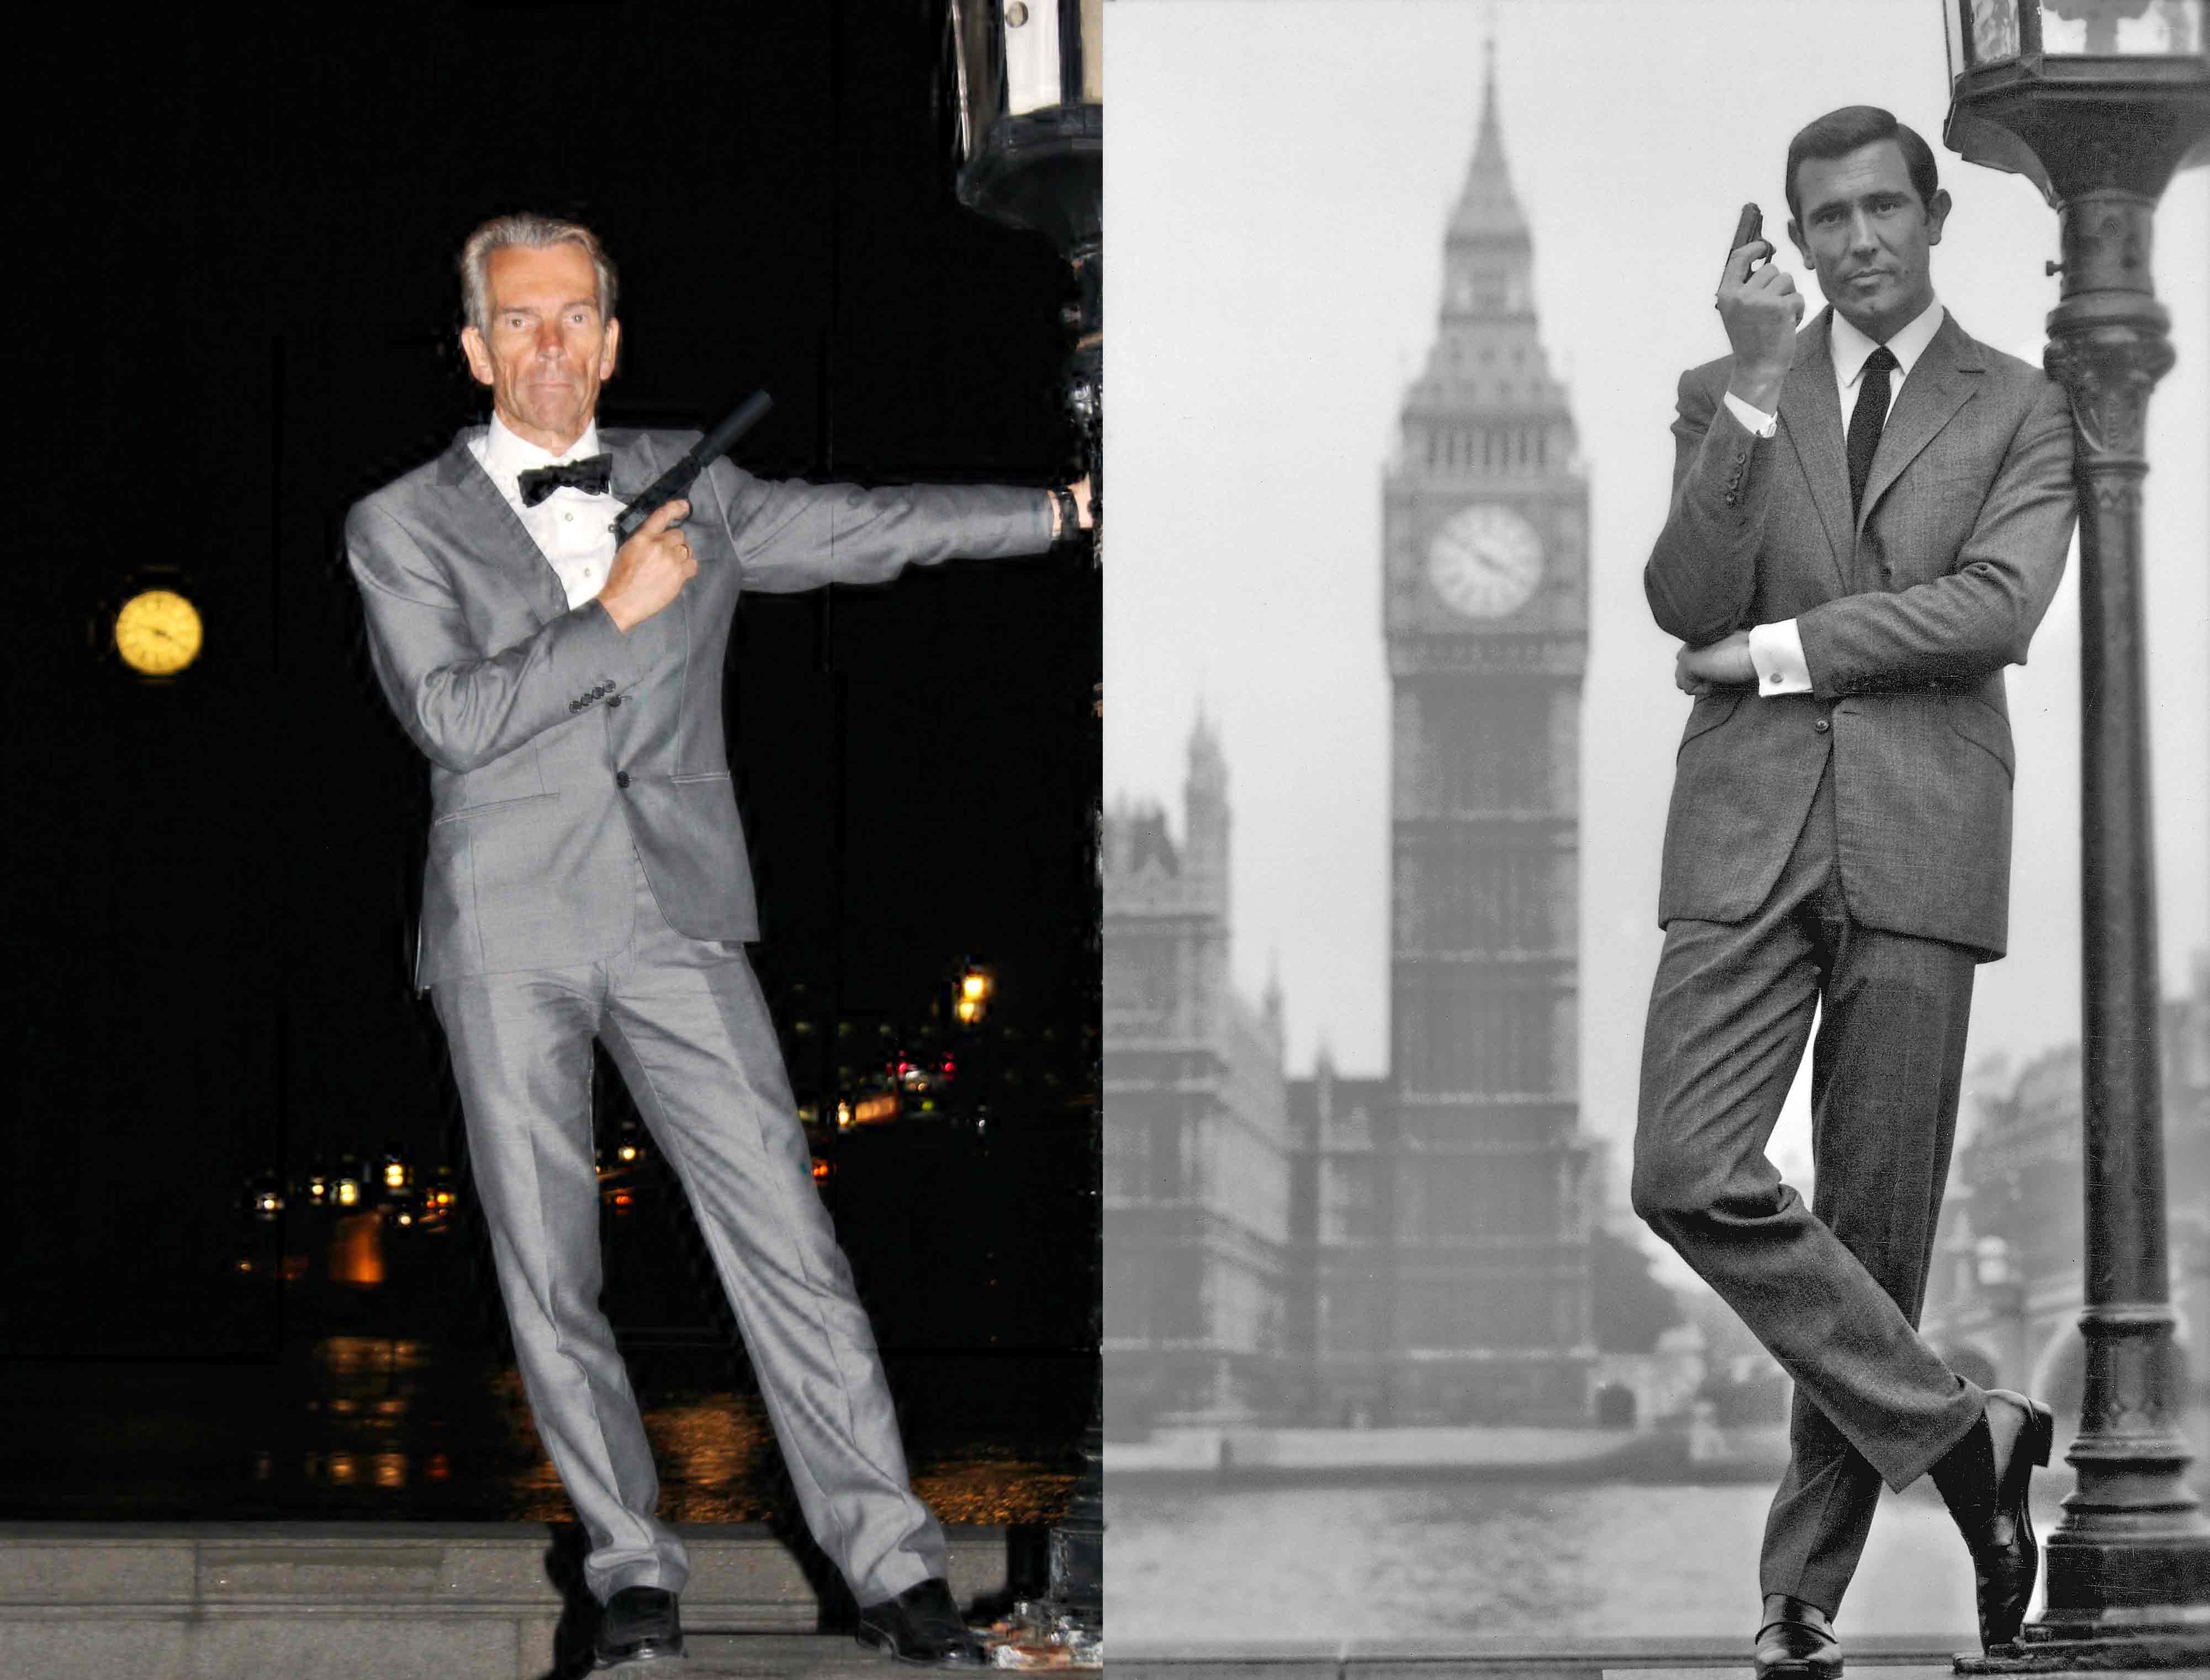 Gunnar Schfer James Bond and George Lazenby as James Bond Big Ben London